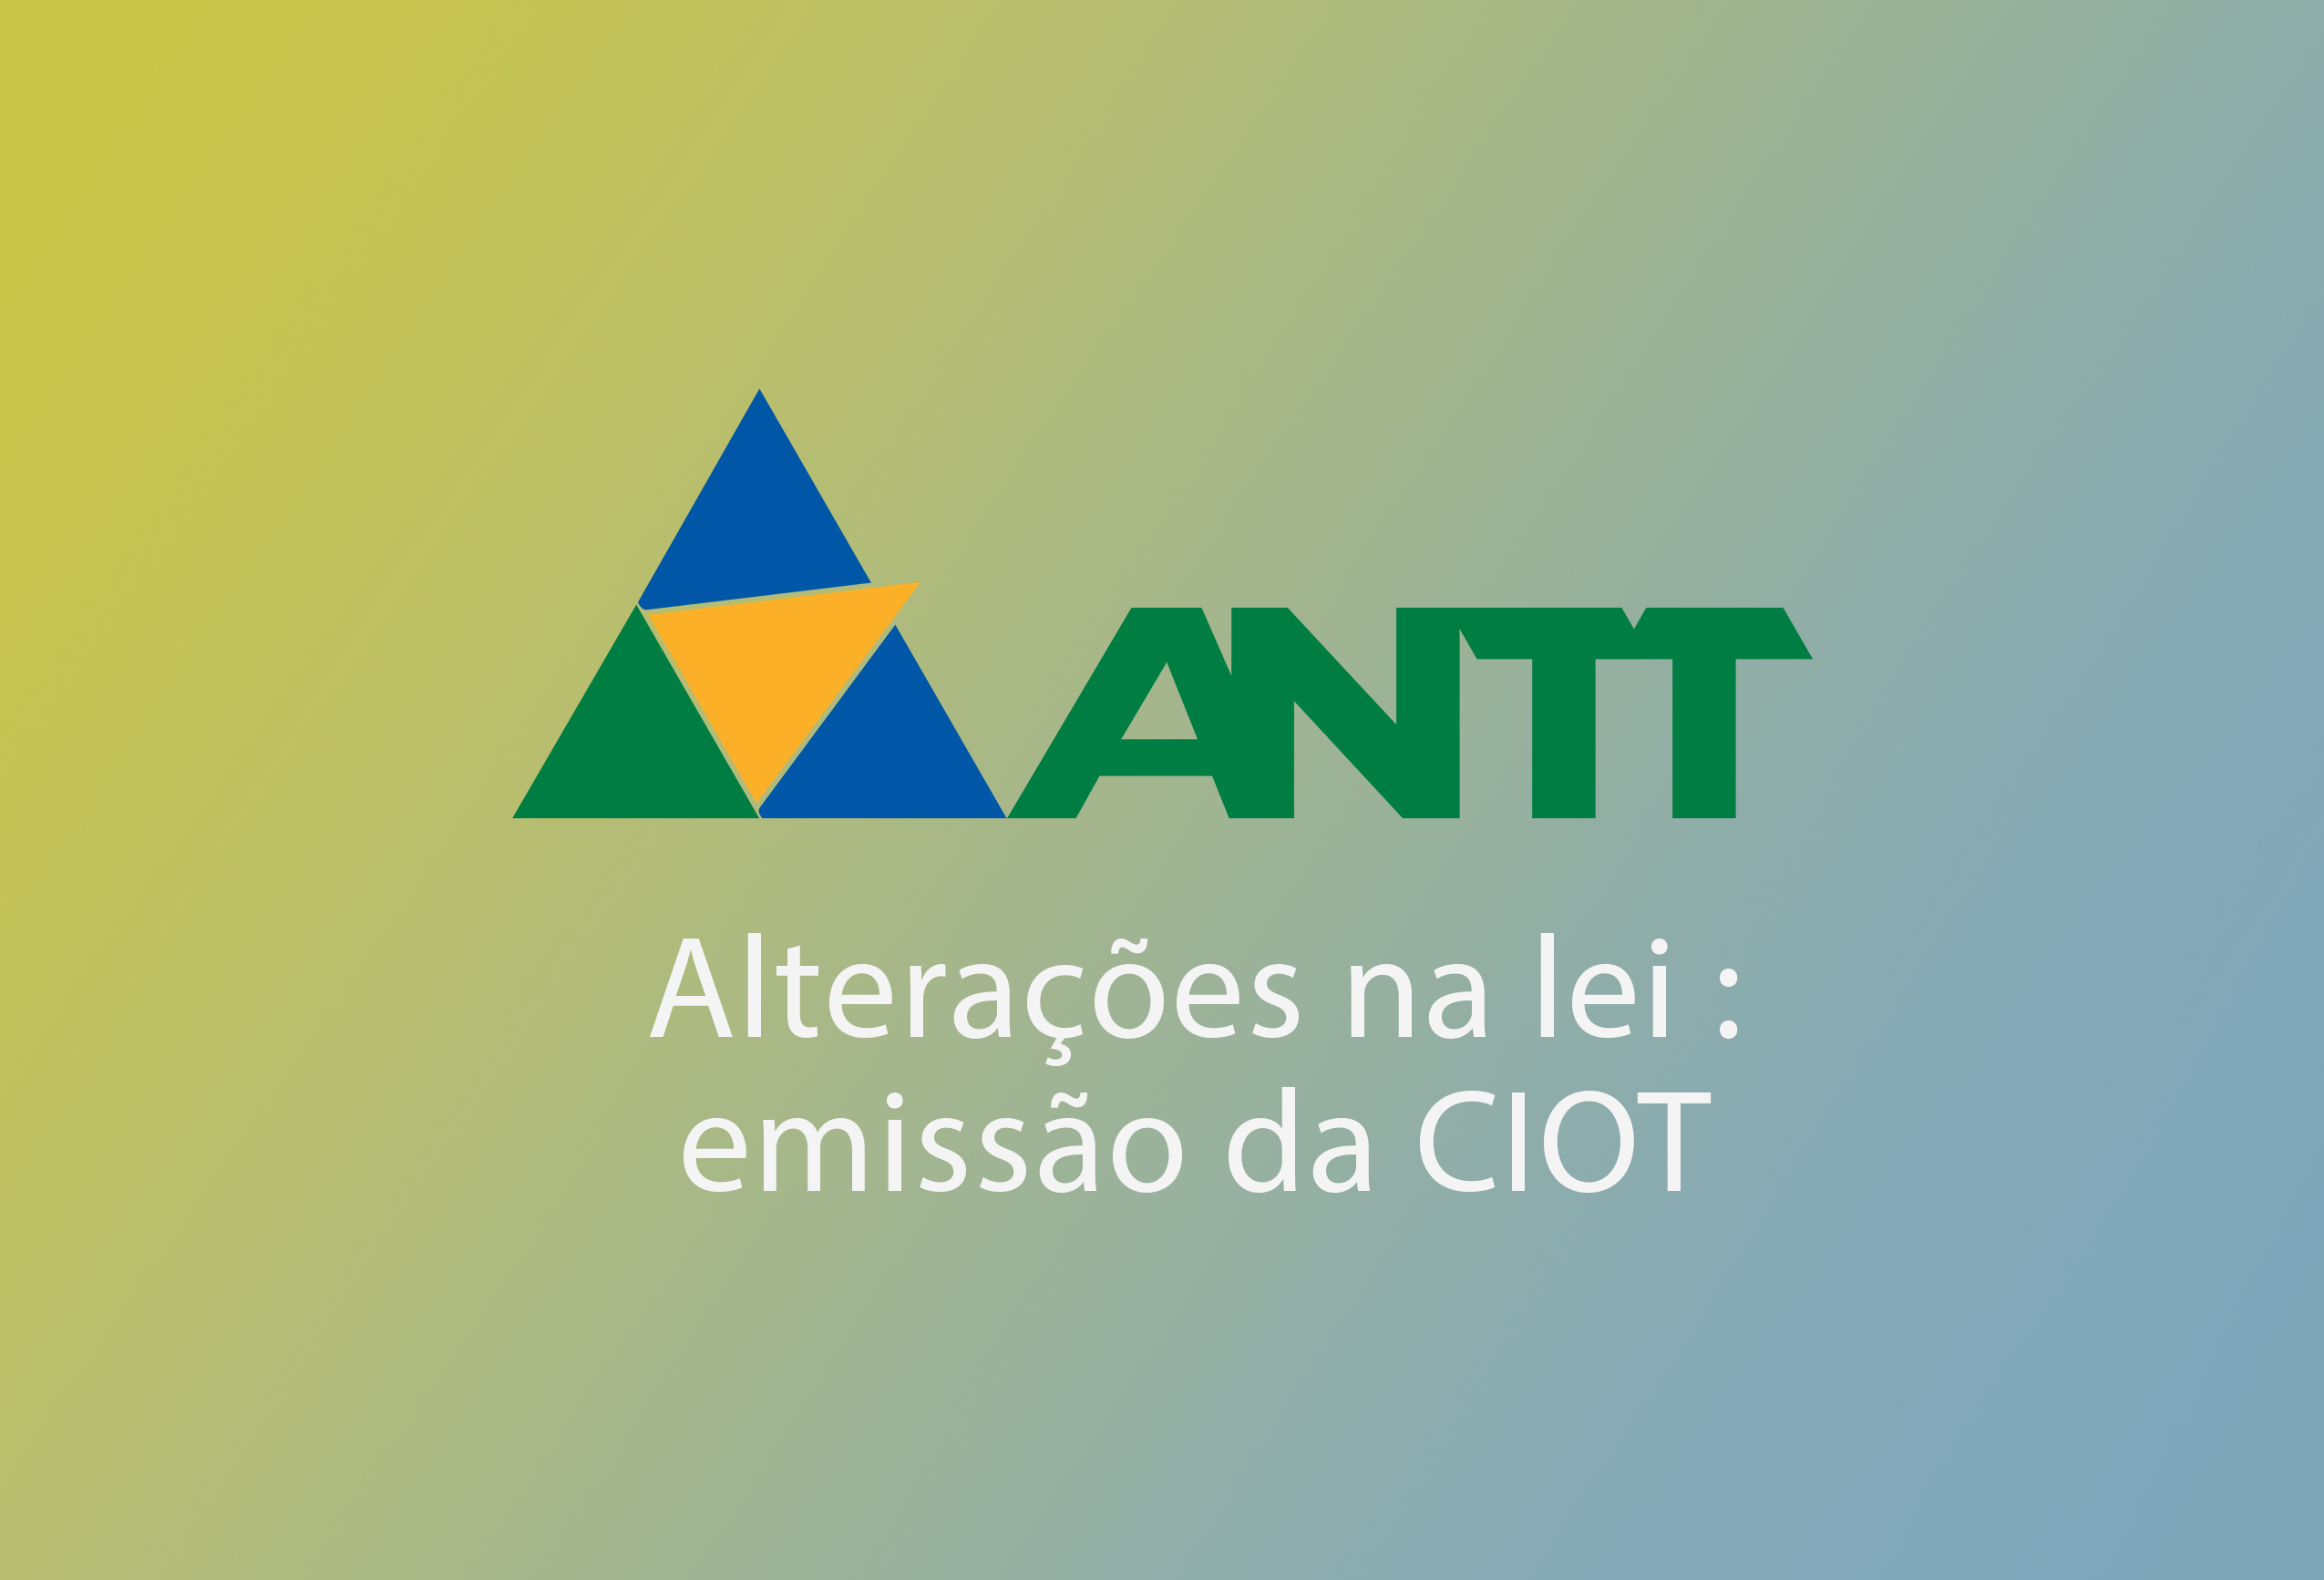 ANTT - OBRIGATORIEDADE DA EMISSÃO DO CIOT (ALTERAÇÕES NA LEI)